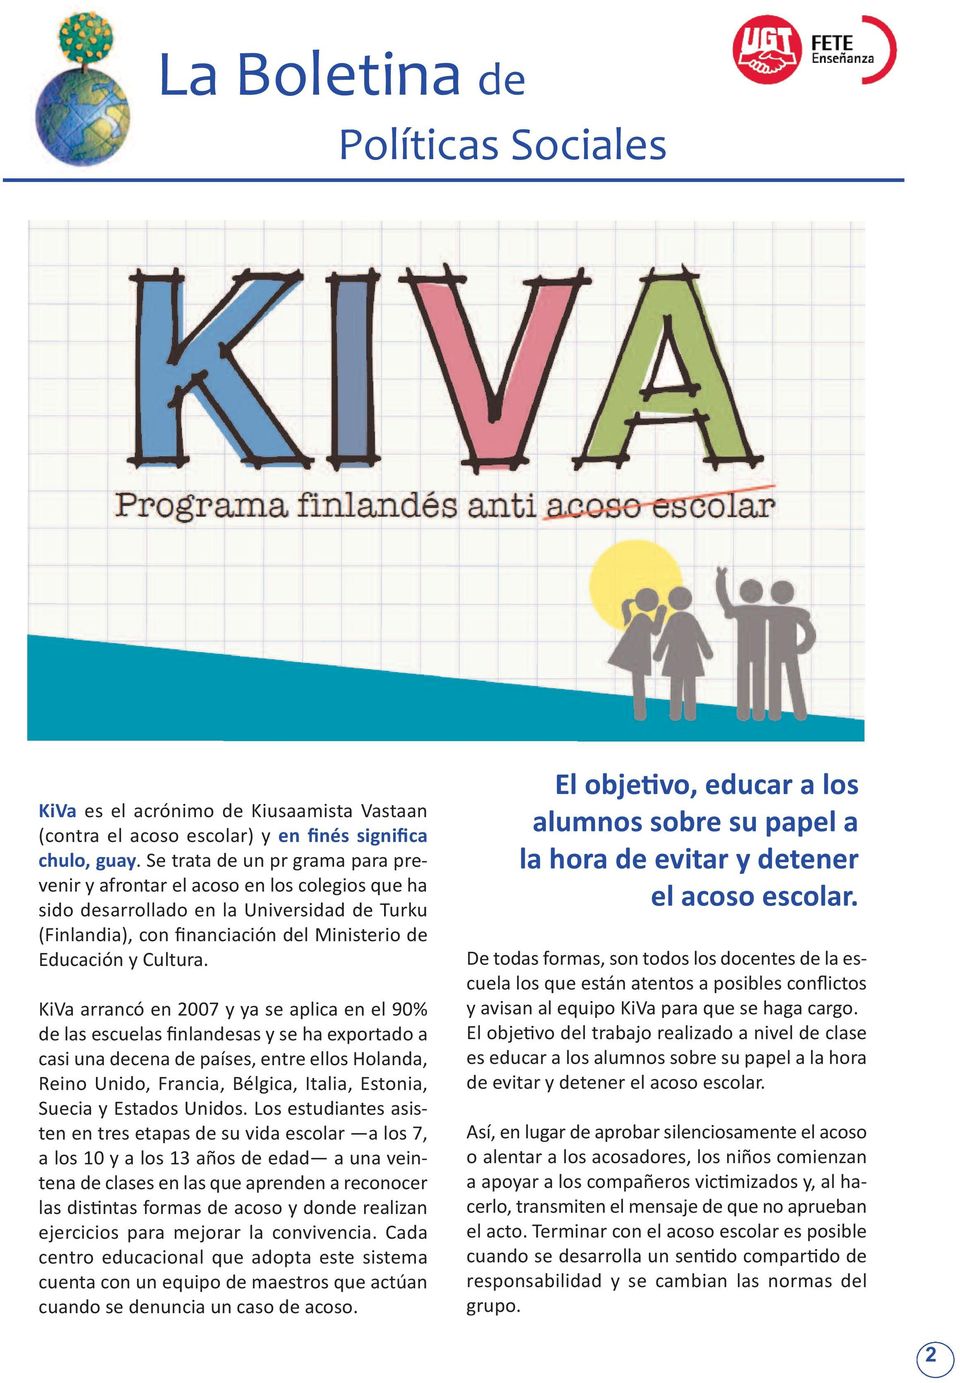 KiVa arrancó en 2007 y ya se aplica en el 90% de las escuelas finlandesas y se ha exportado a casi una decena de países, entre ellos Holanda, Reino Unido, Francia, Bélgica, Italia, Estonia, Suecia y